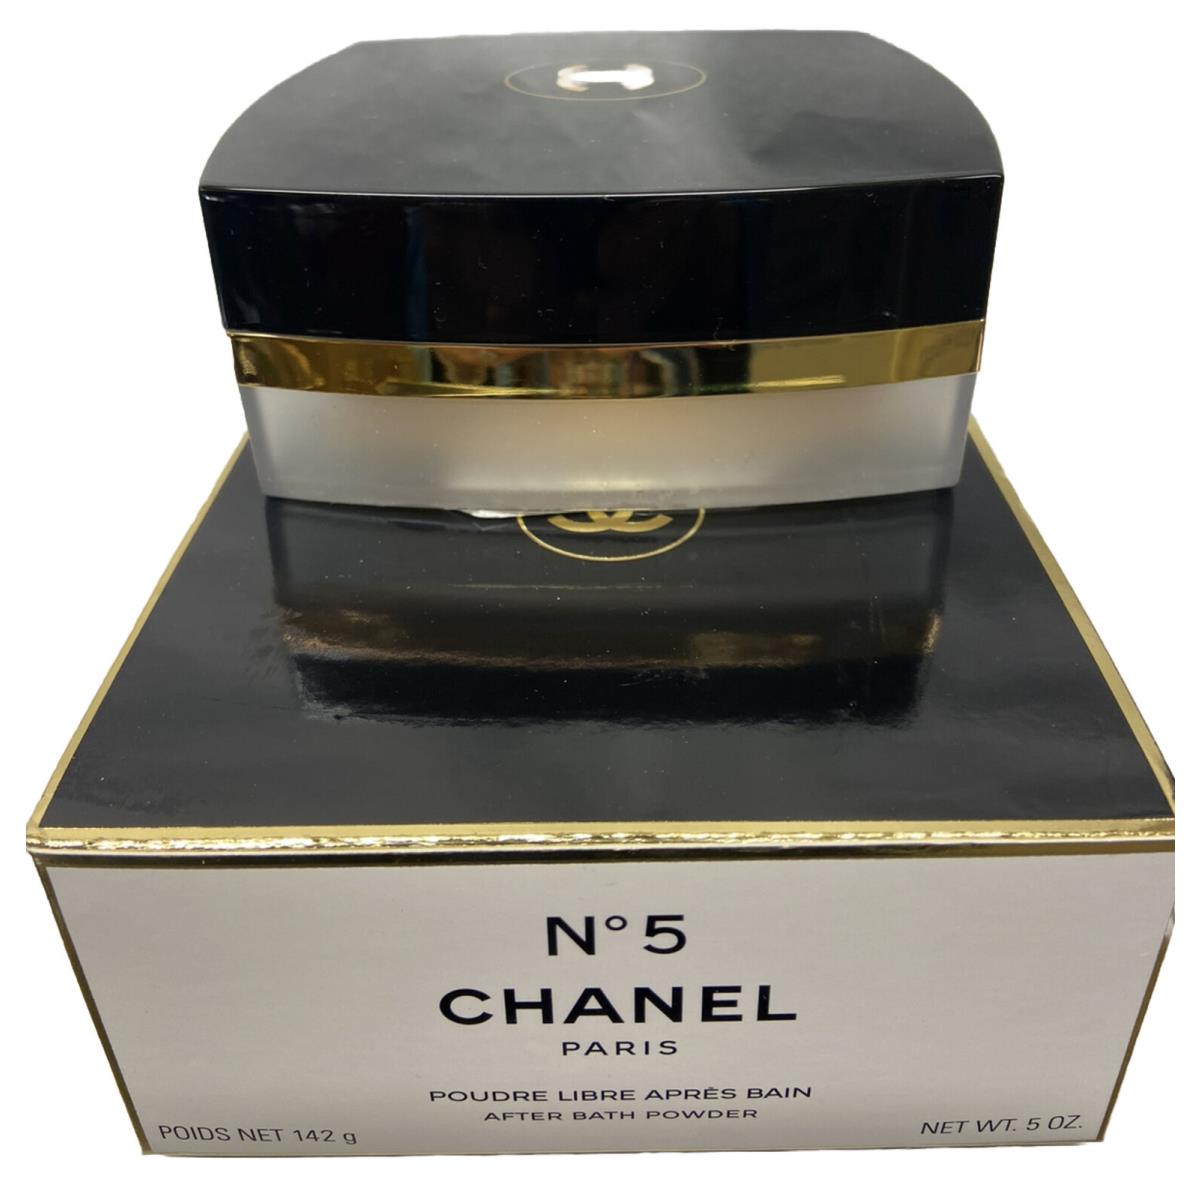 Chanel No5 After Bath Powder 5oz Scuffed Box